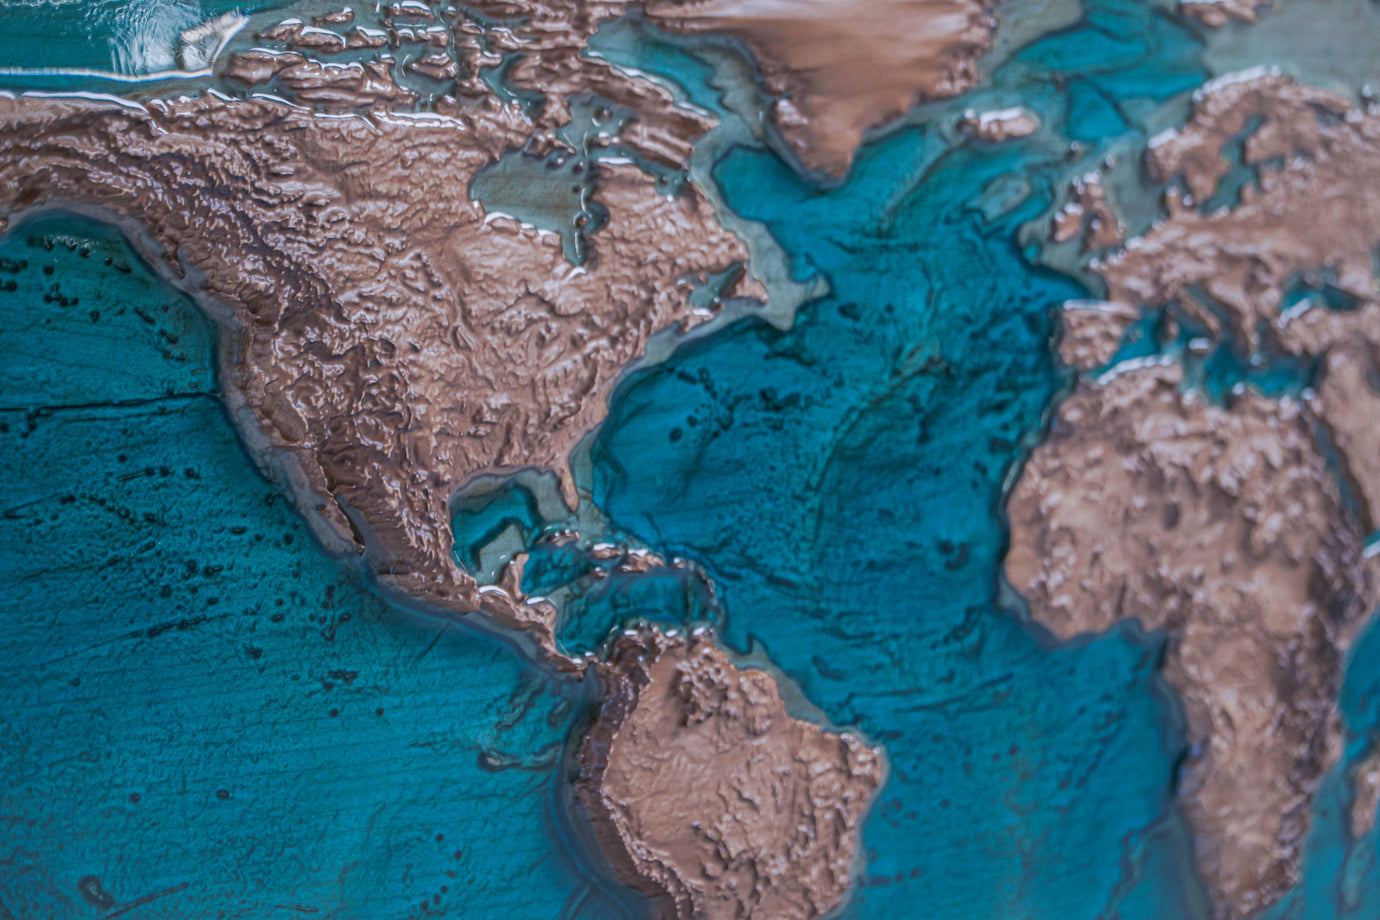 Топографічна карта світу EPOXY 3D з ясеня 100х50х5 см колір Nut з епоксидною смолою